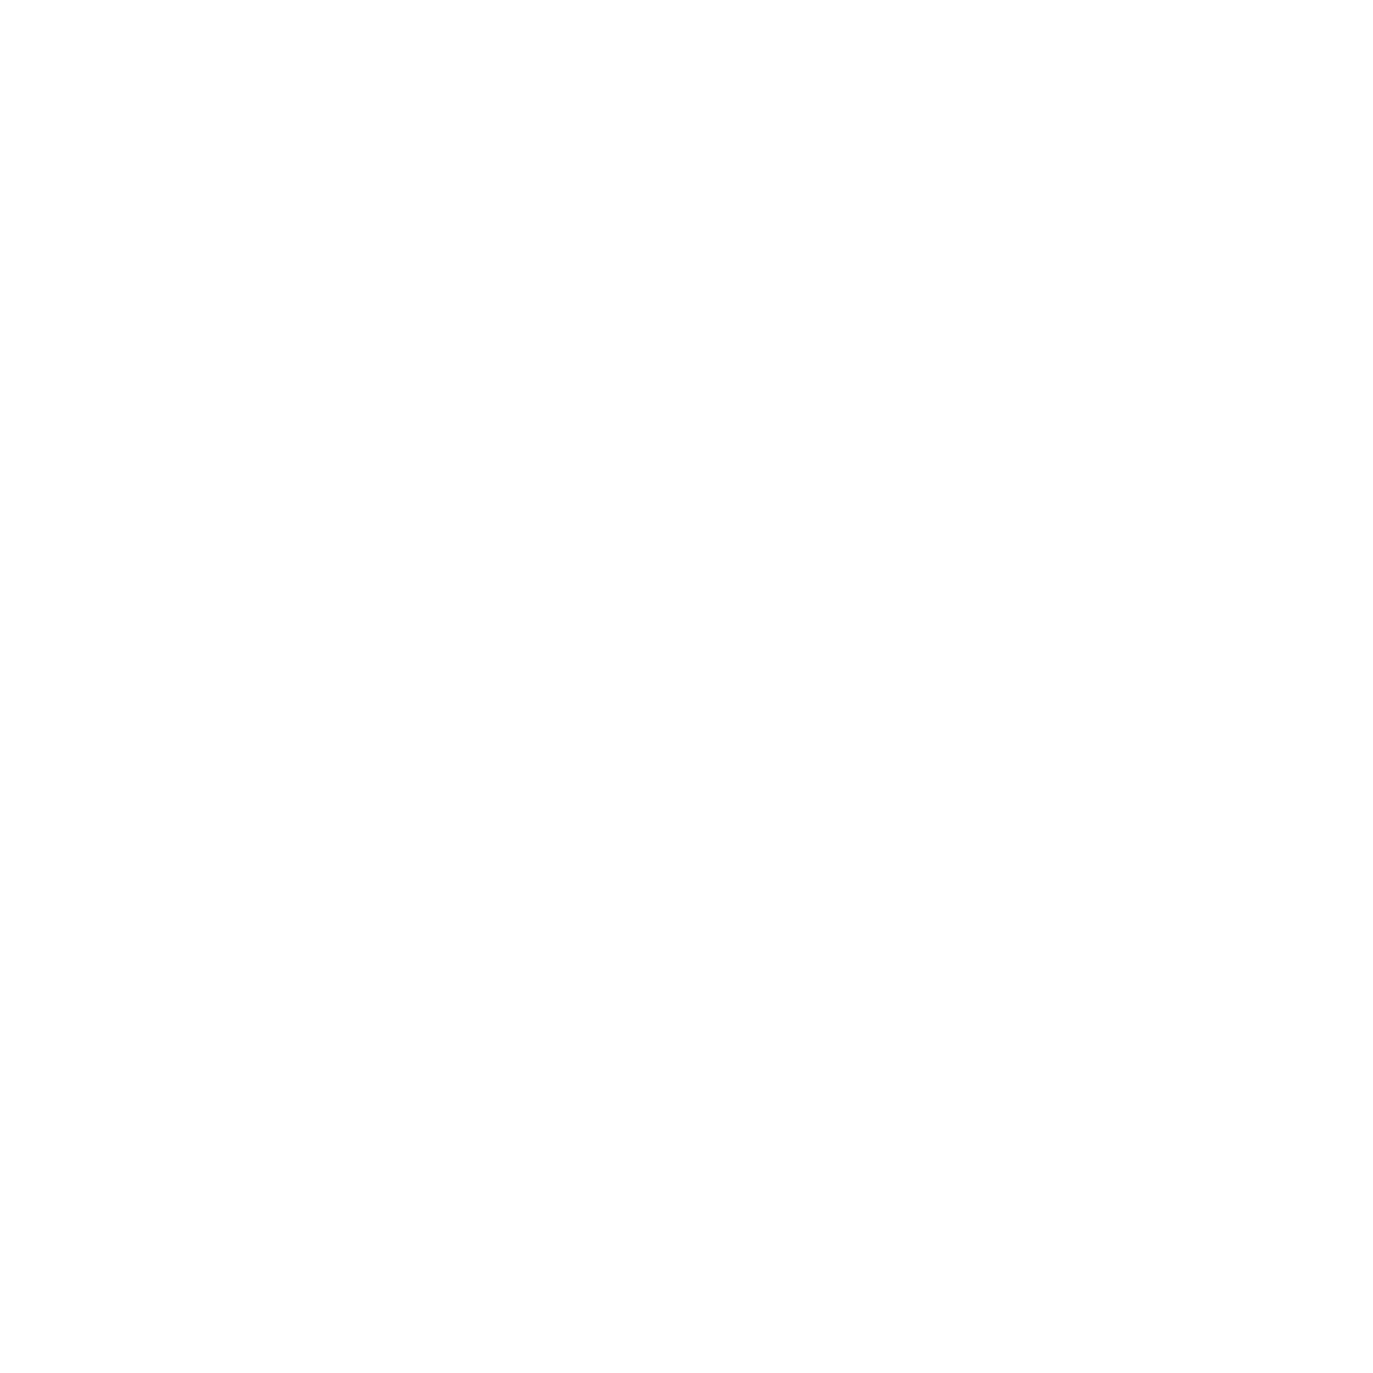 ufabet - HacksawGaming